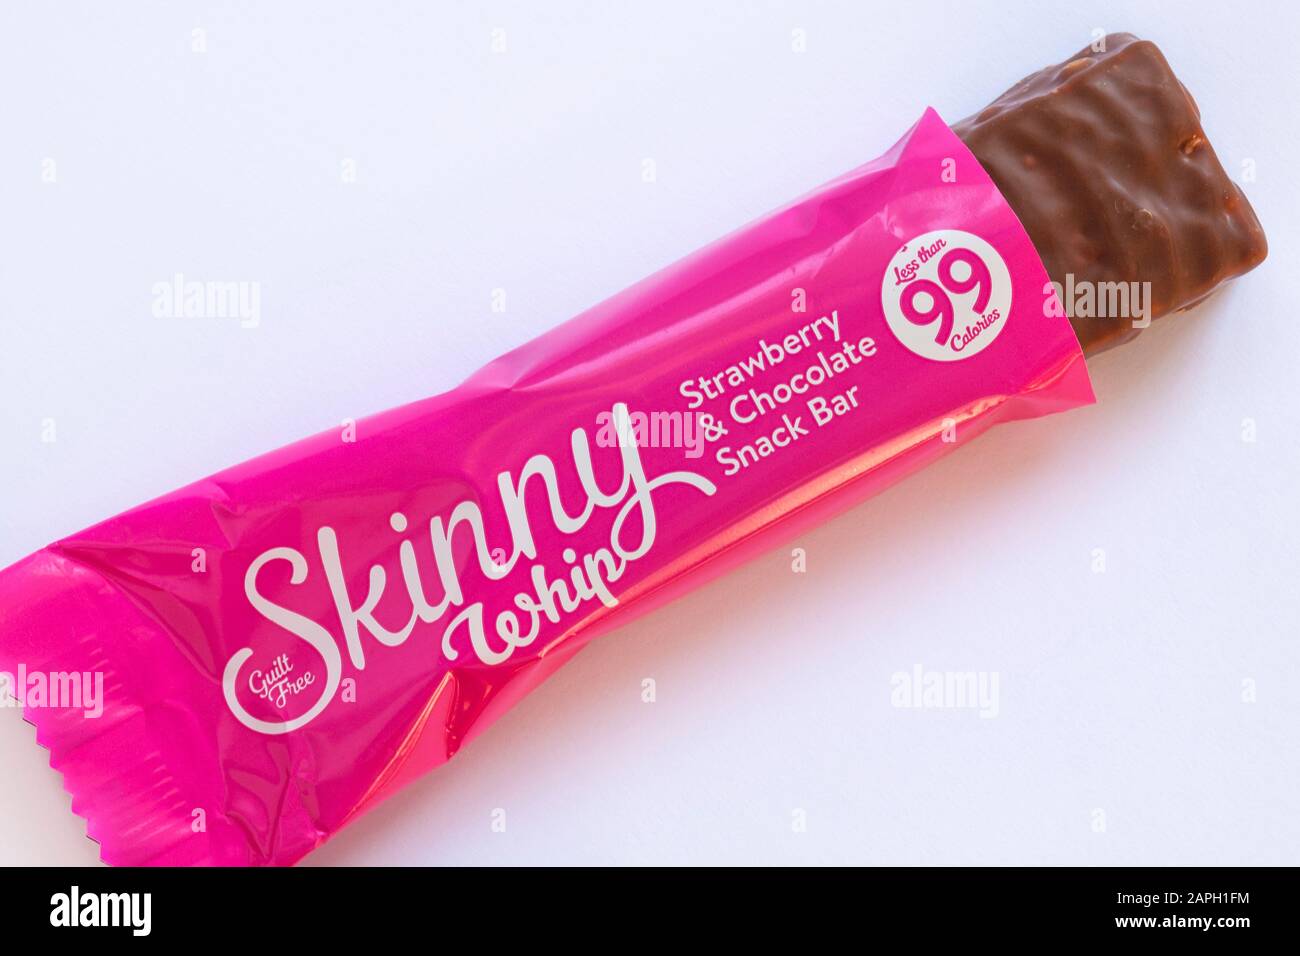 Le snack-bar sans culpabilité Skinny Whip Strawberry & Chocolate s'est ouvert pour montrer le contenu sur fond blanc - moins de 99 calories Banque D'Images